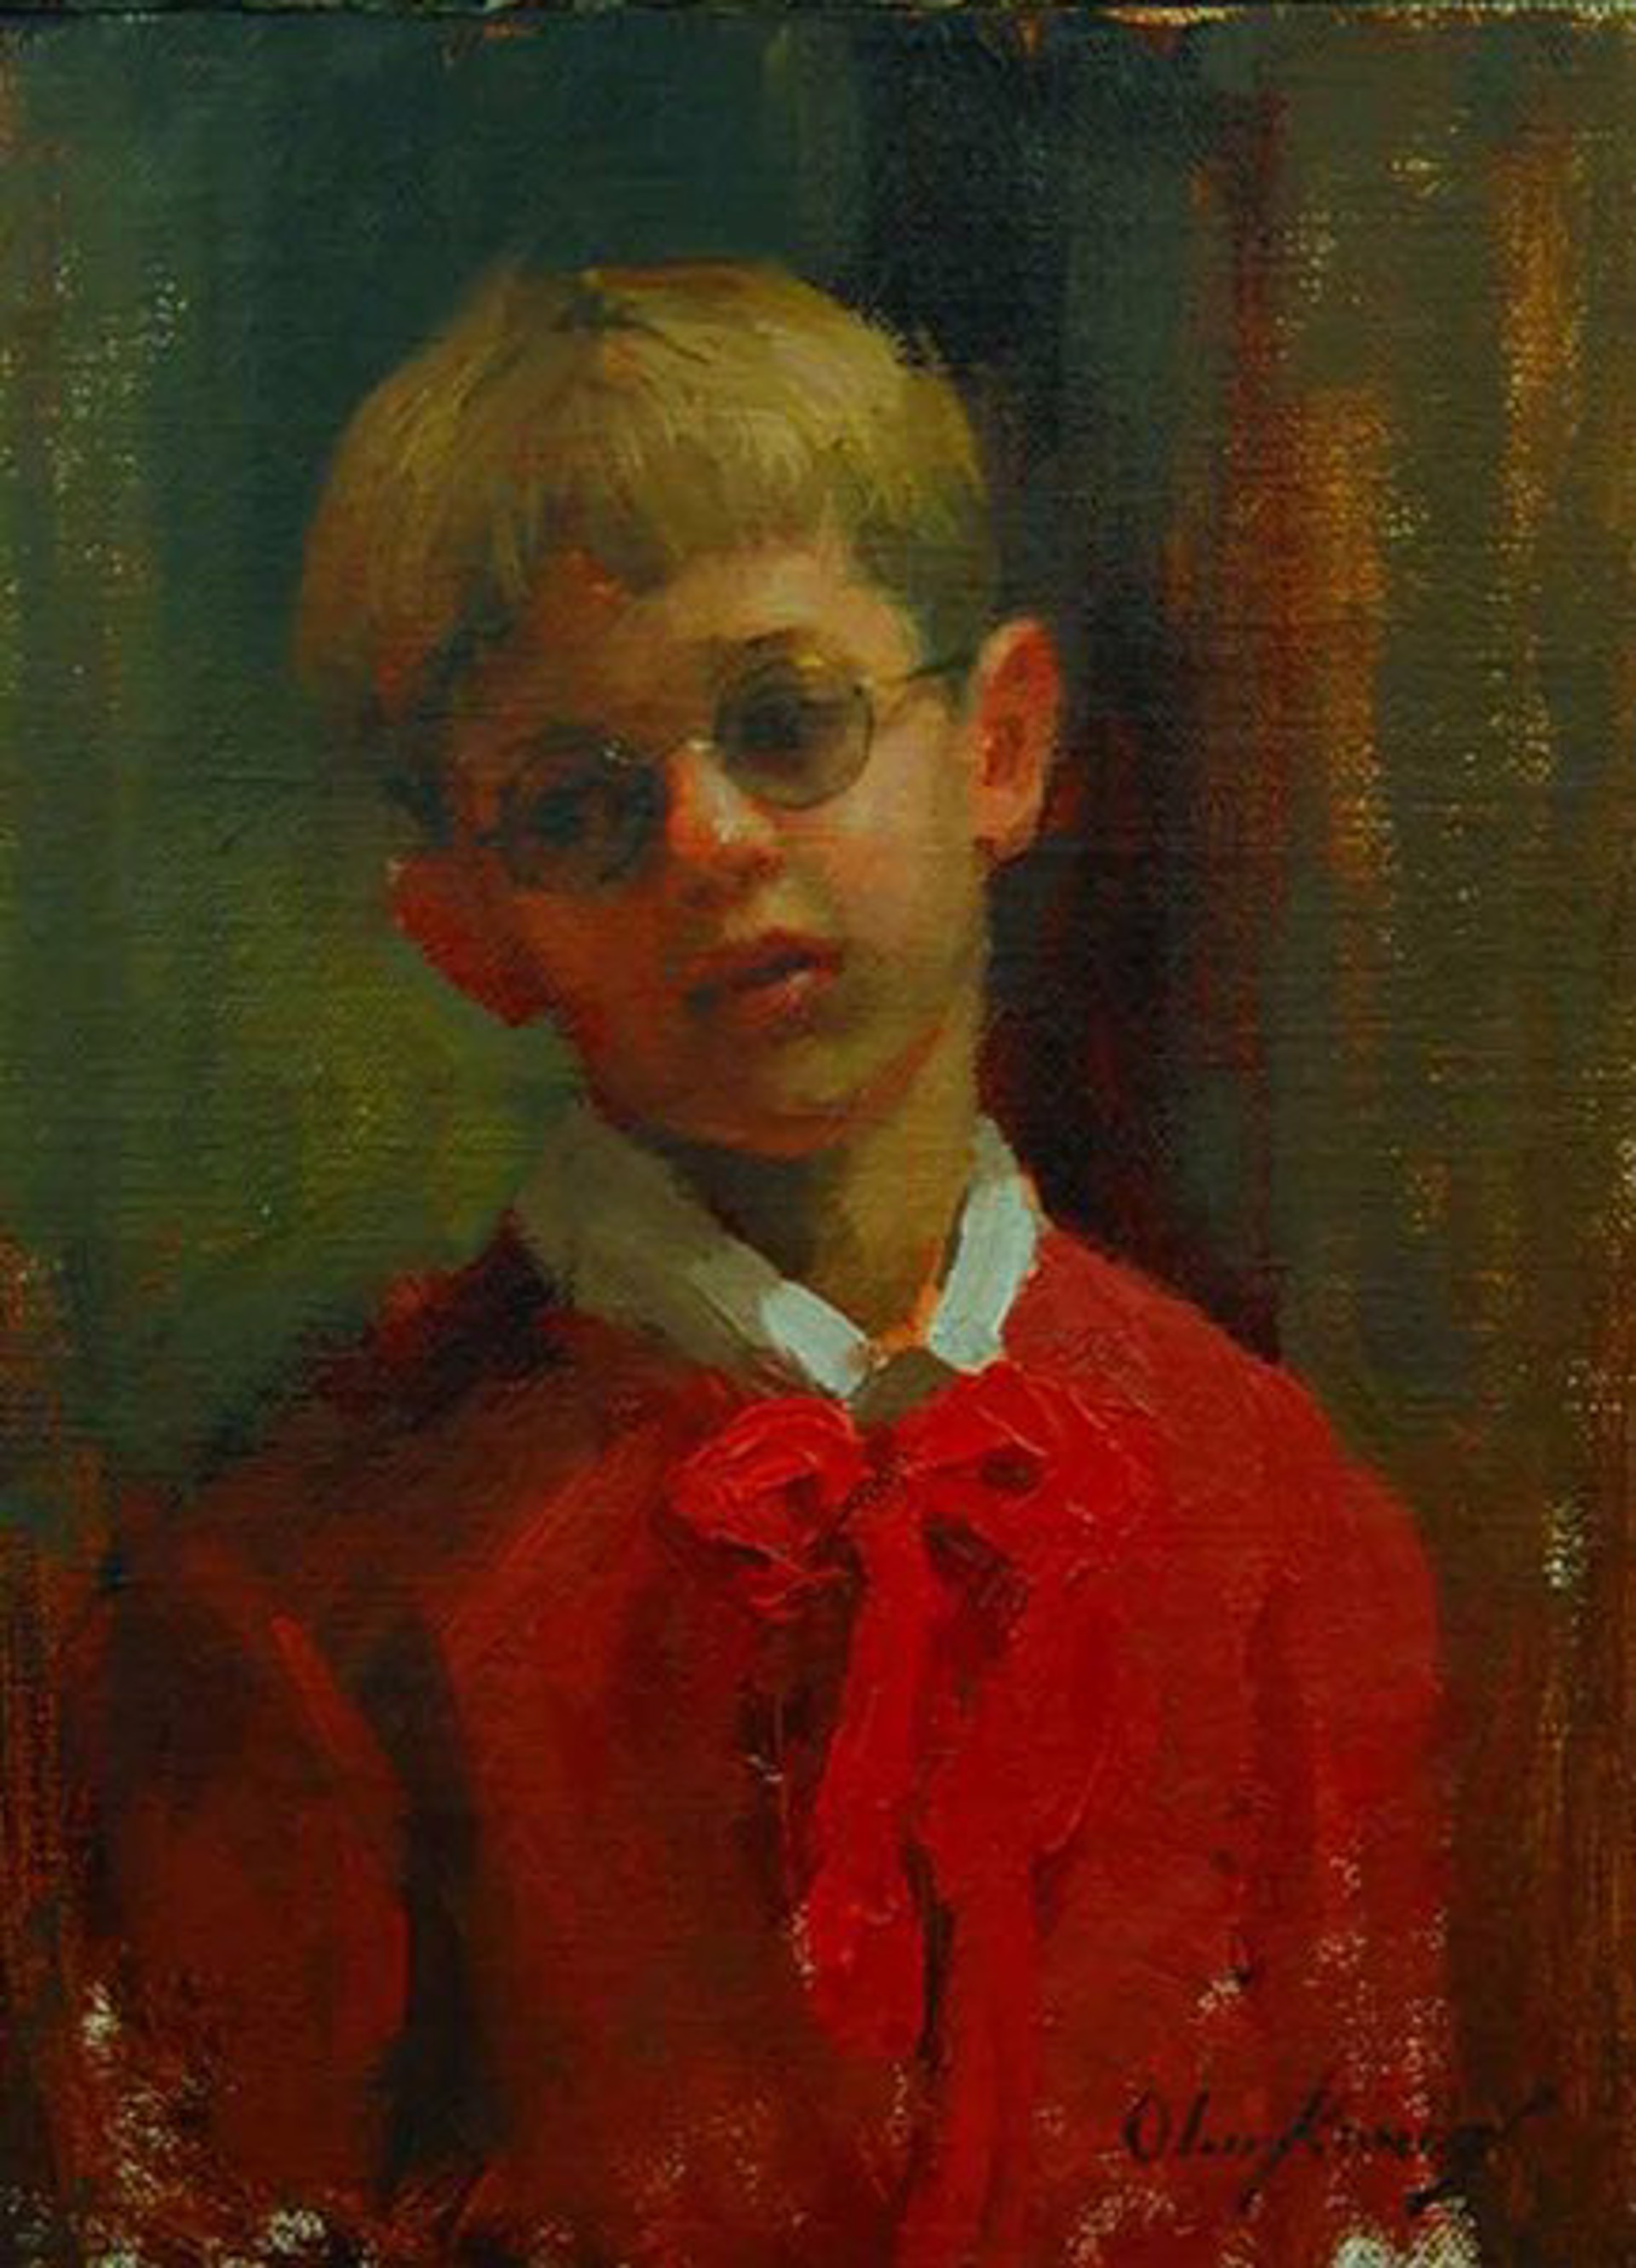 Boy In Red by Marci Oleszkiewicz